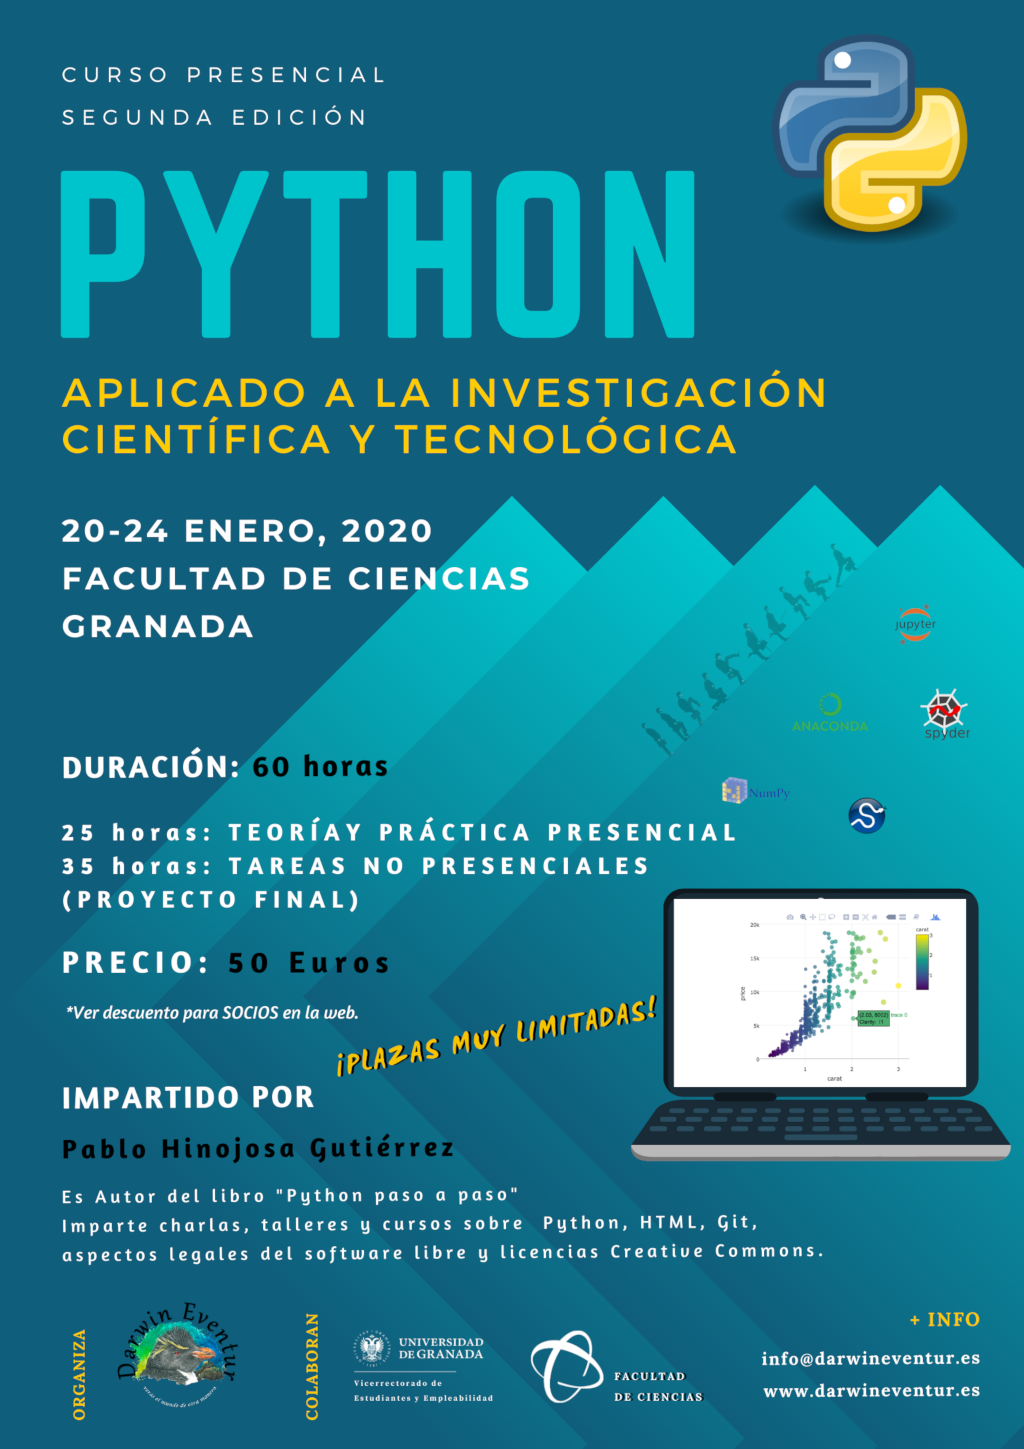 Curso "Python aplicado a la Investigación Científica y Tecnológica" 2ª edición